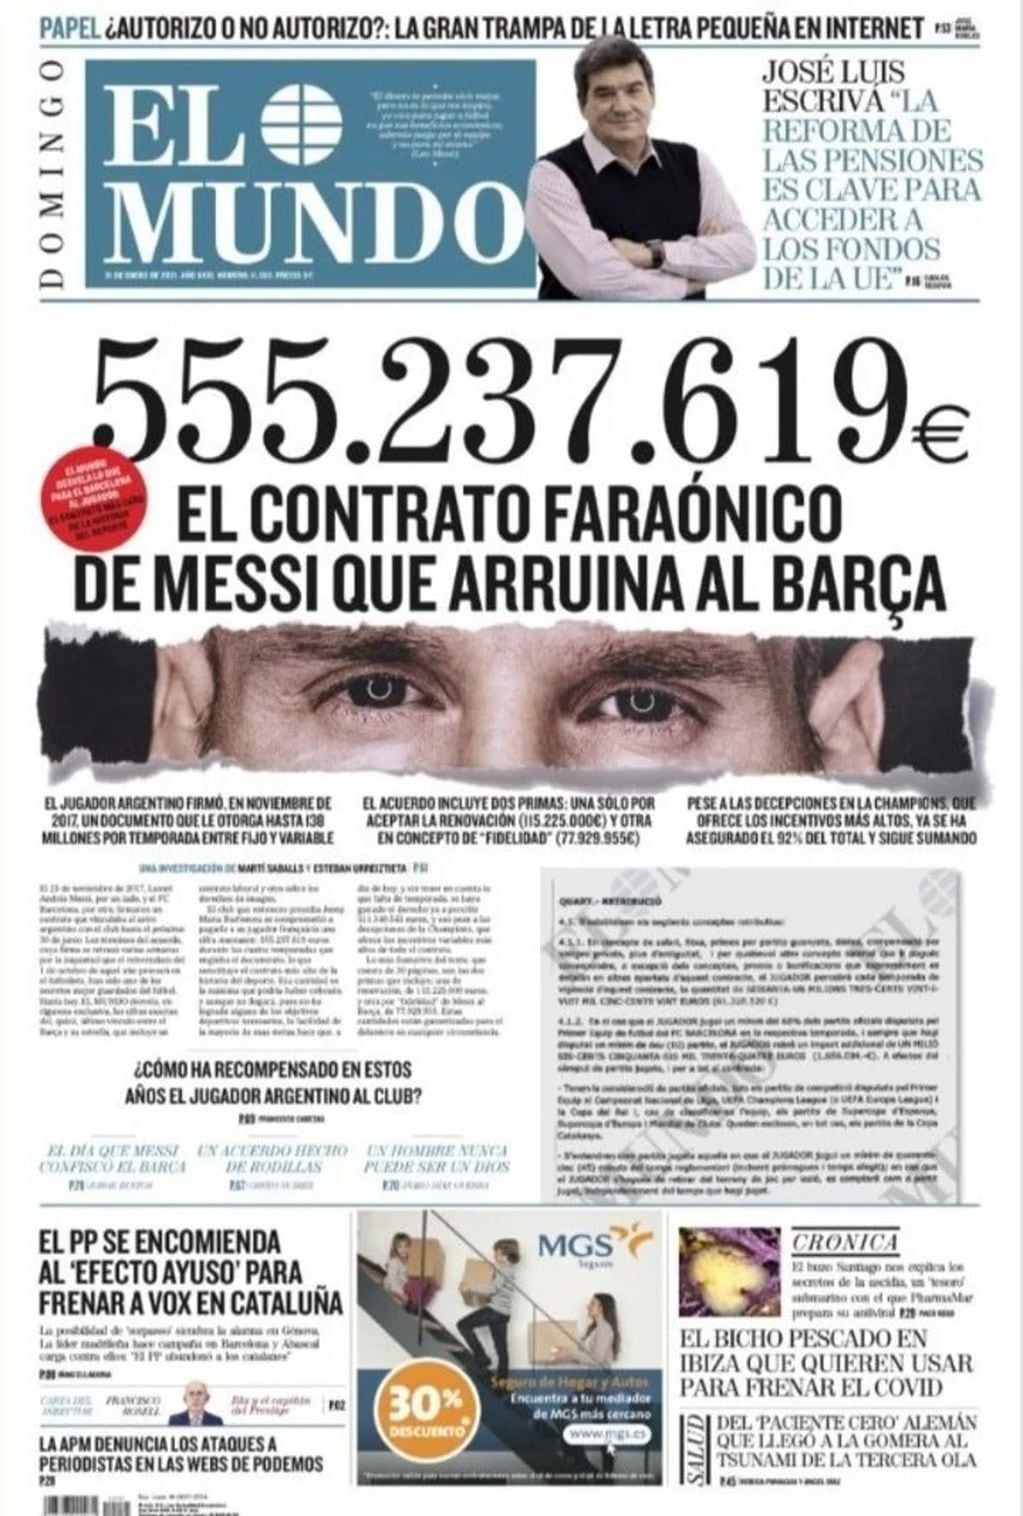 Portada de diario El Mundo revelando lo que cobra Lionel Messi